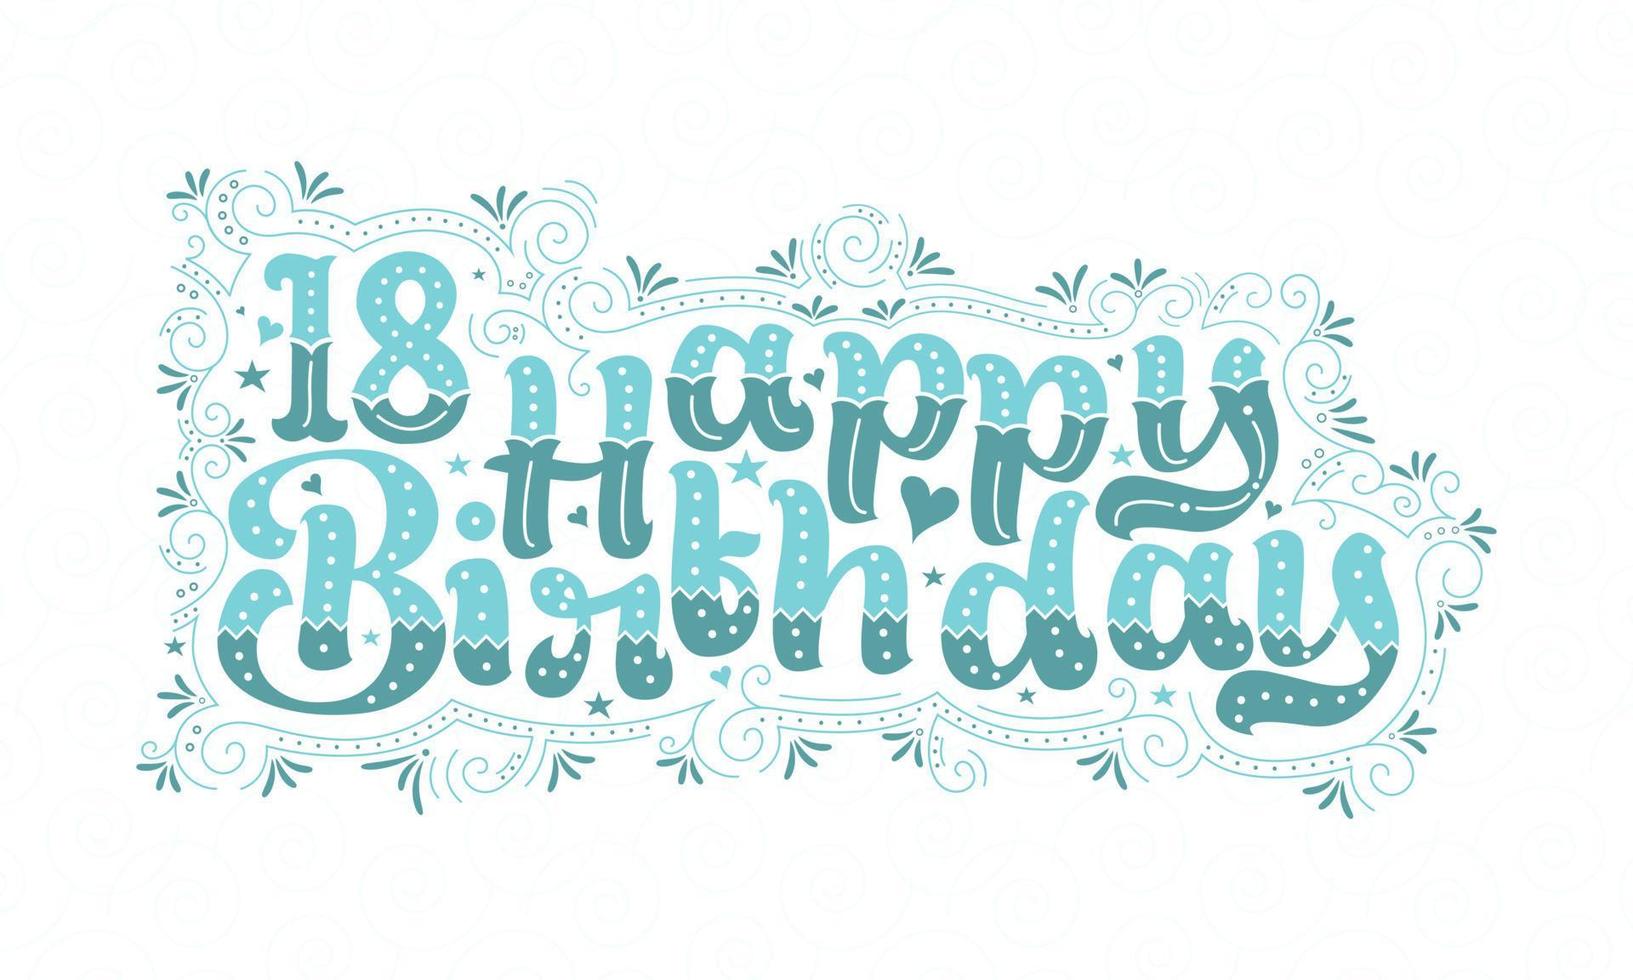 18° buon compleanno lettering, 18 anni compleanno bellissimo design tipografico con puntini, linee e foglie acqua. vettore